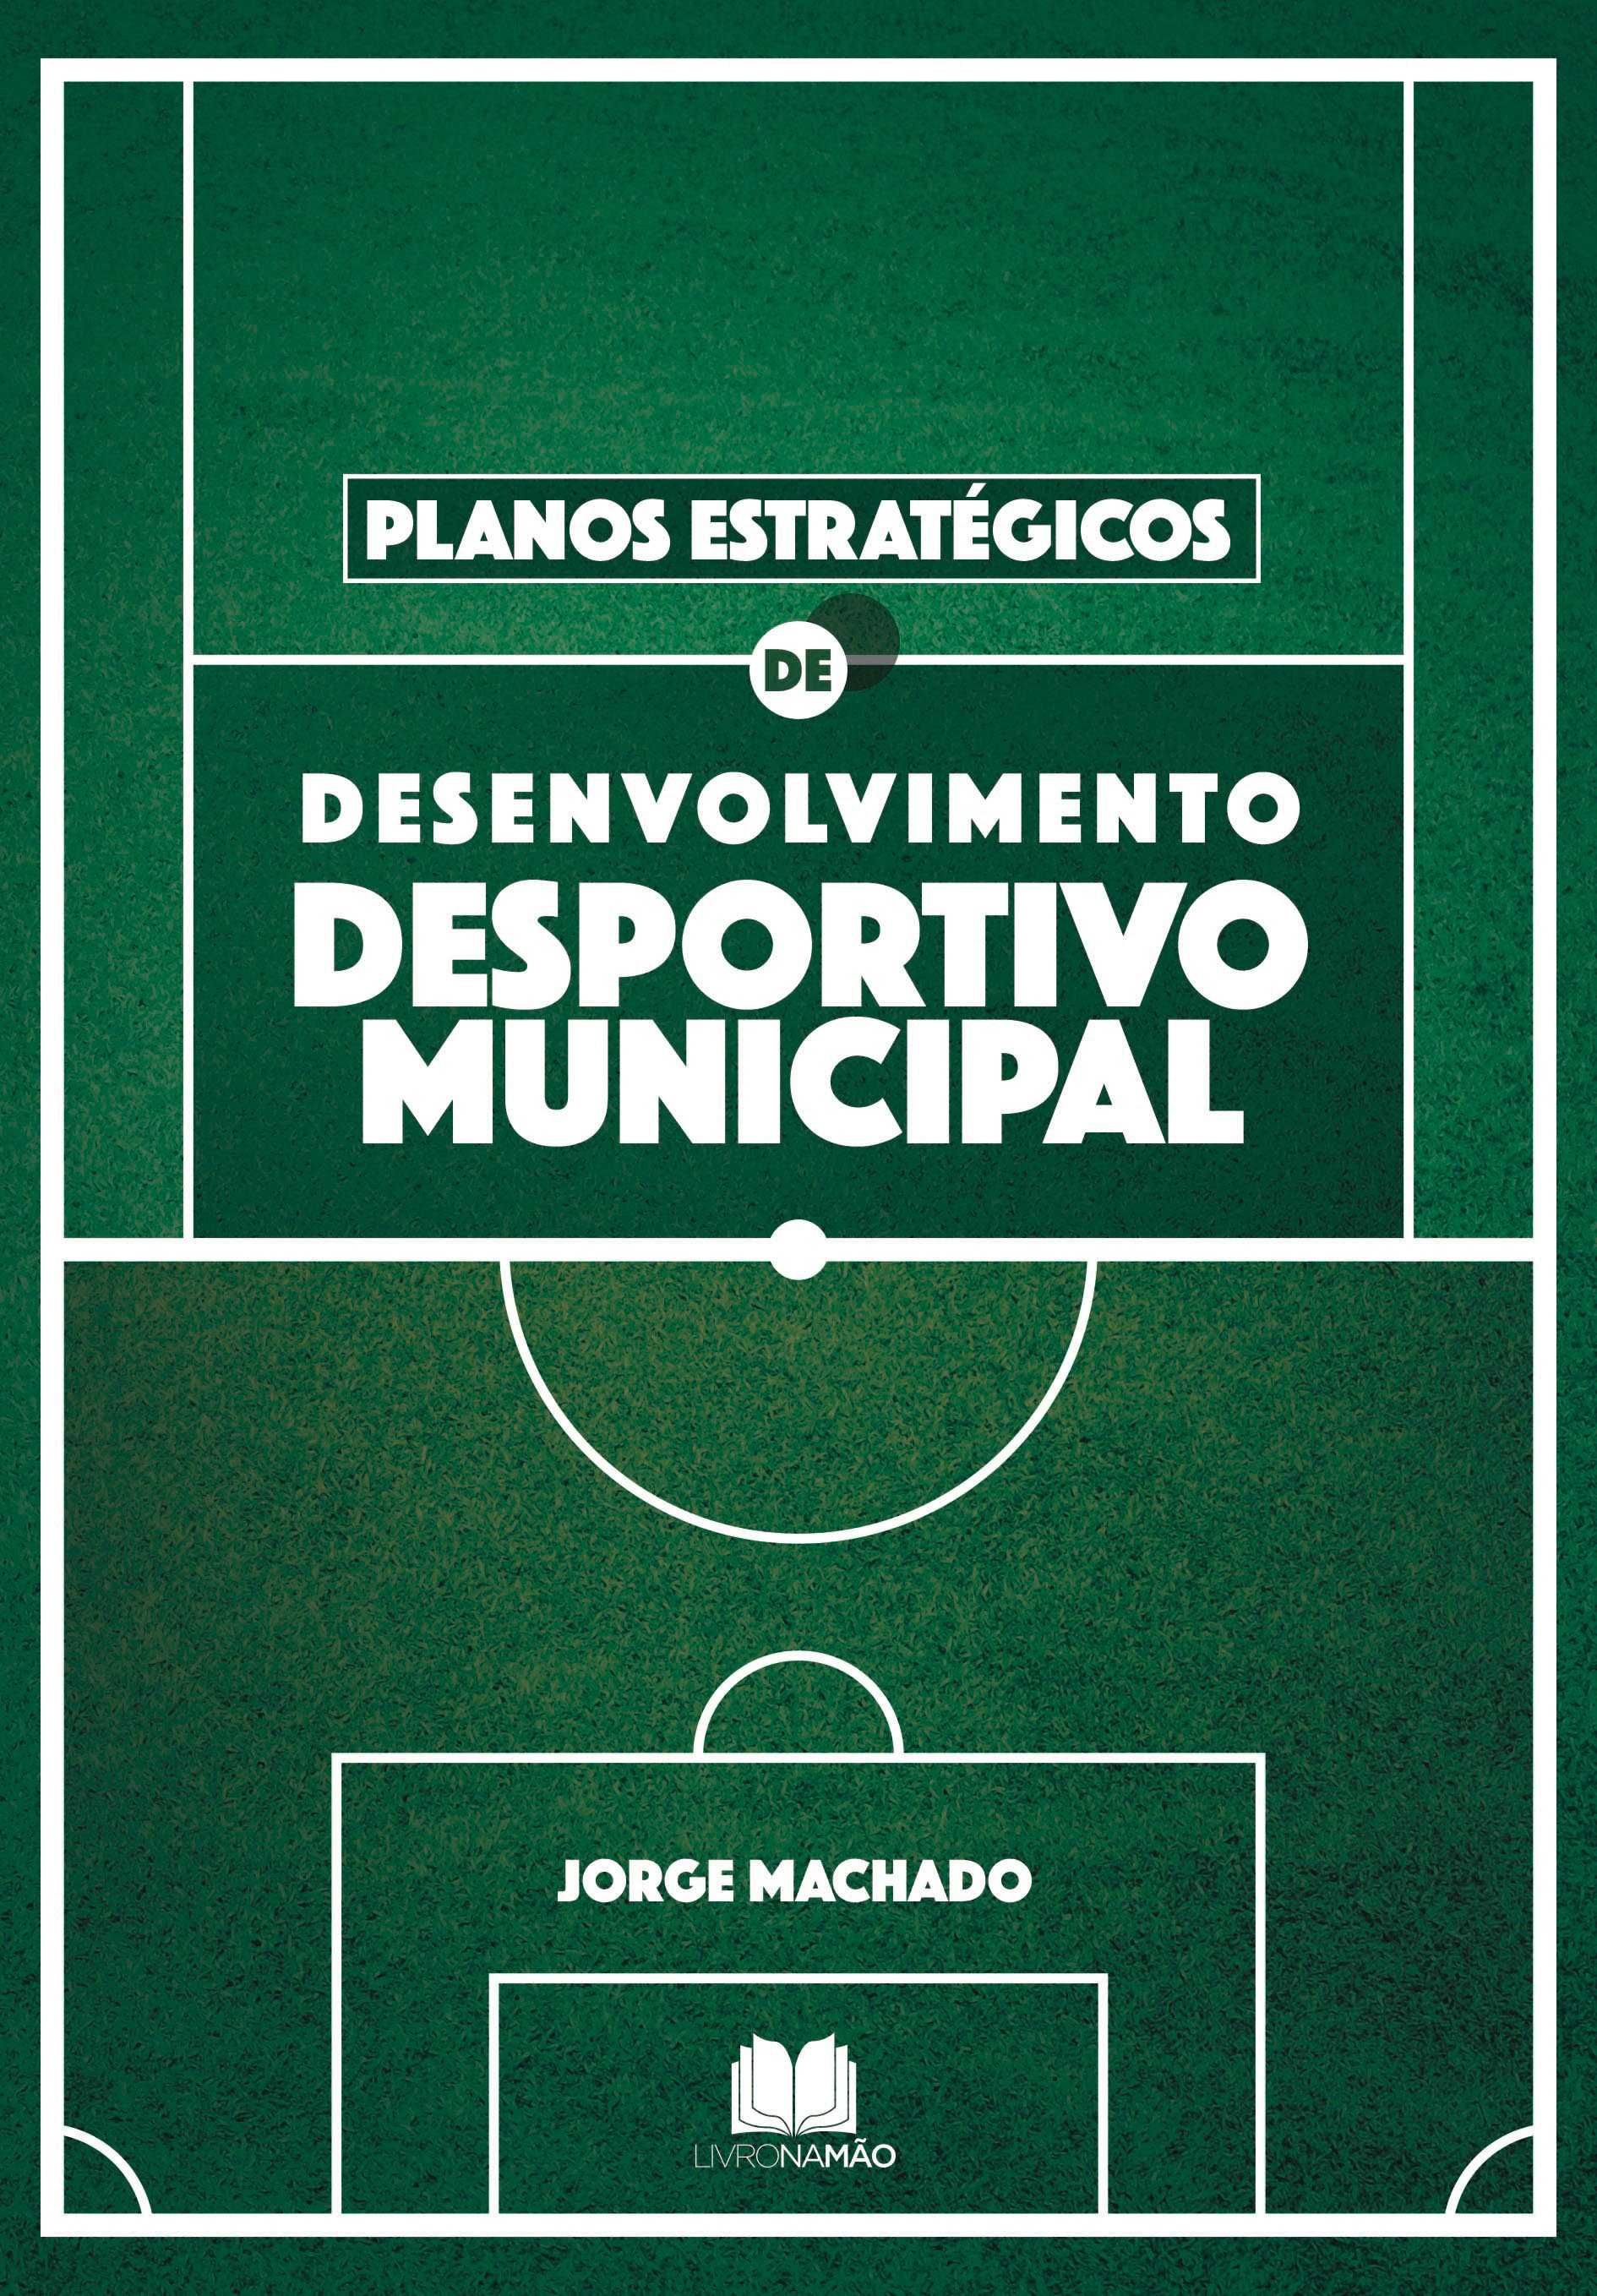 Planos Estratégicos de Desenvolvimento Desportivo Municipal